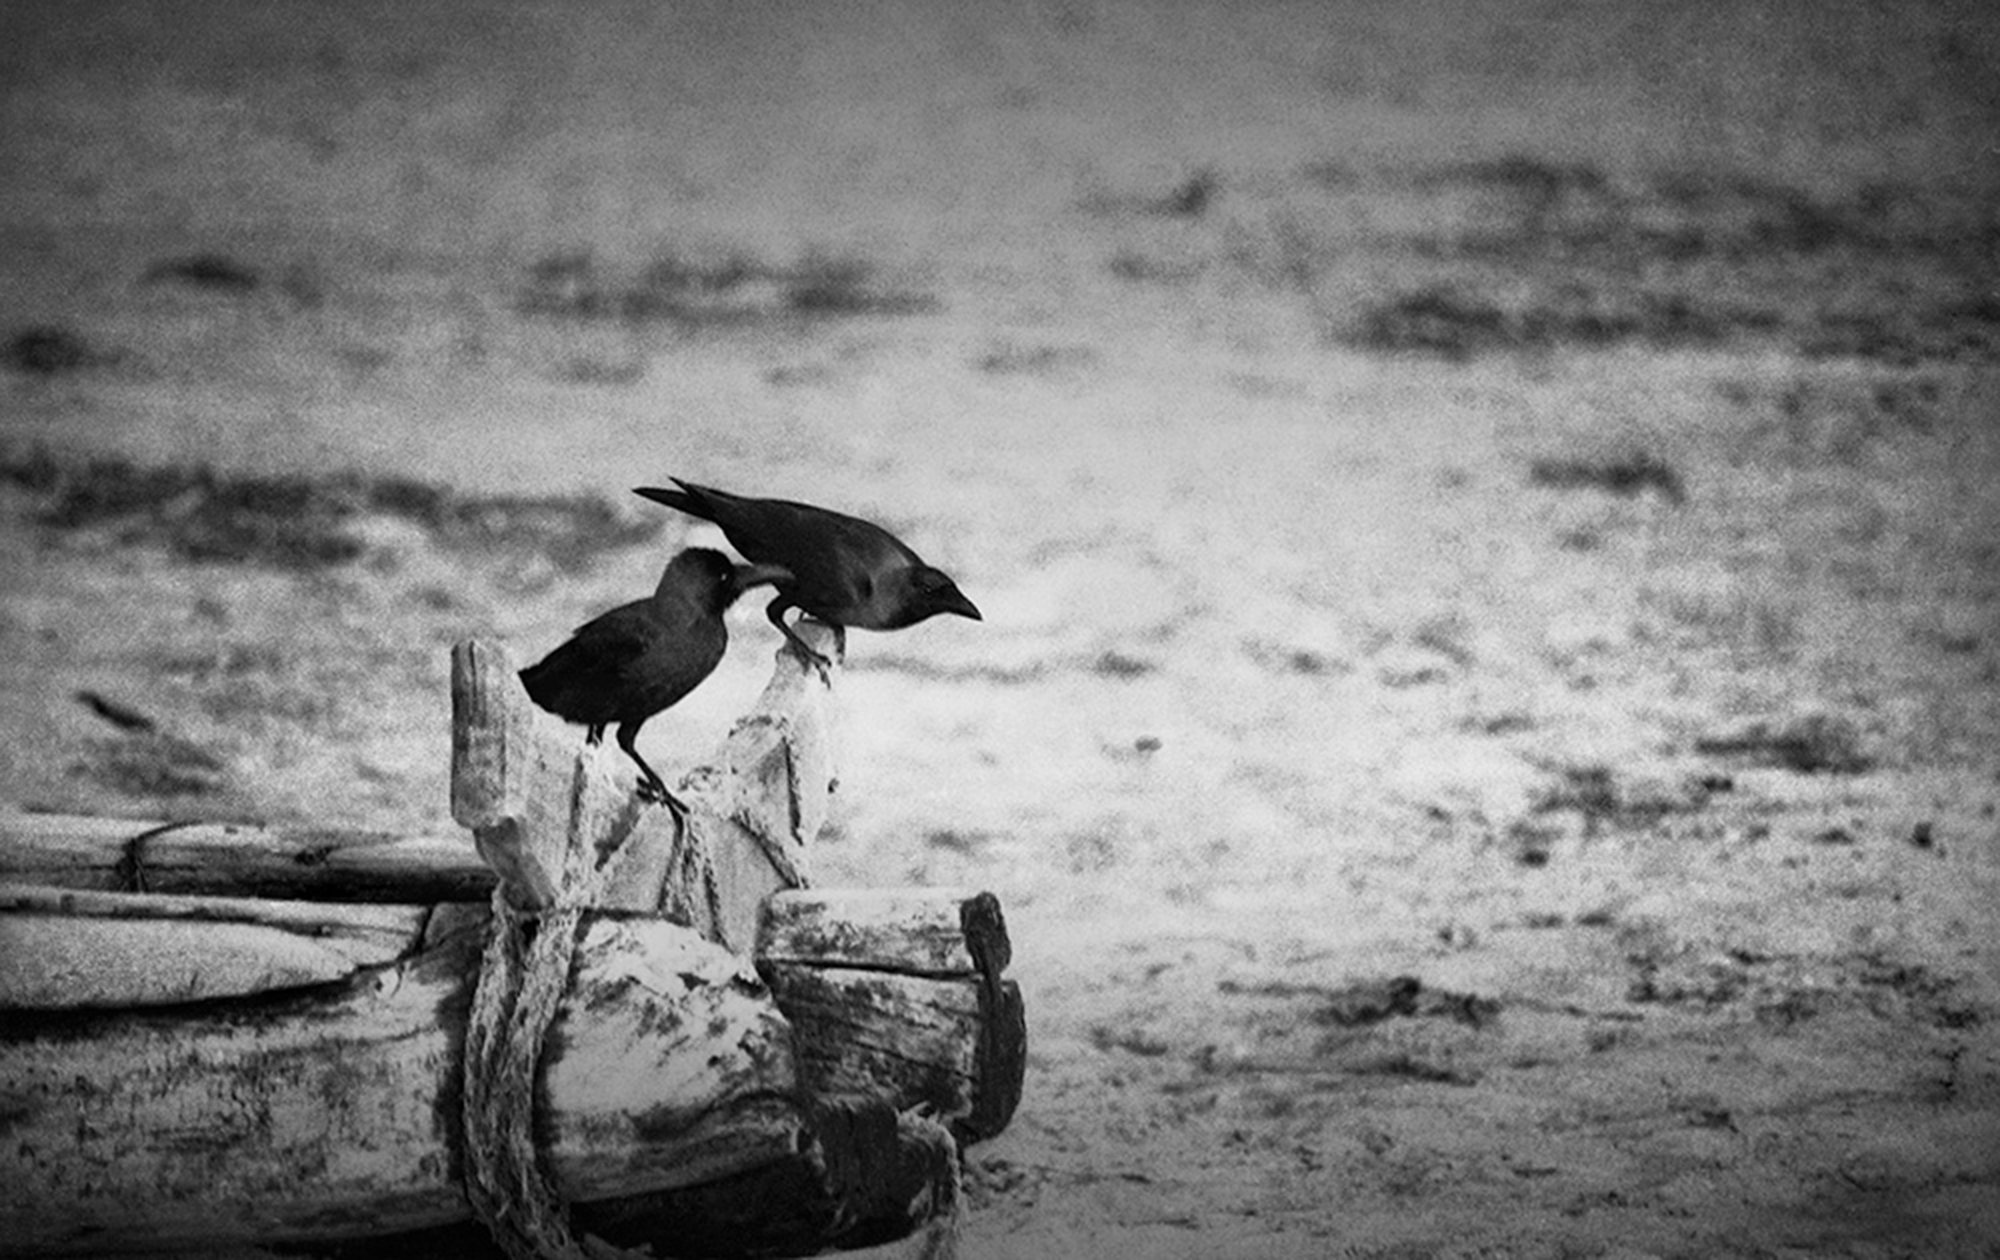 The Crow © അബുൽ കലാം ആസാദ് 1980s